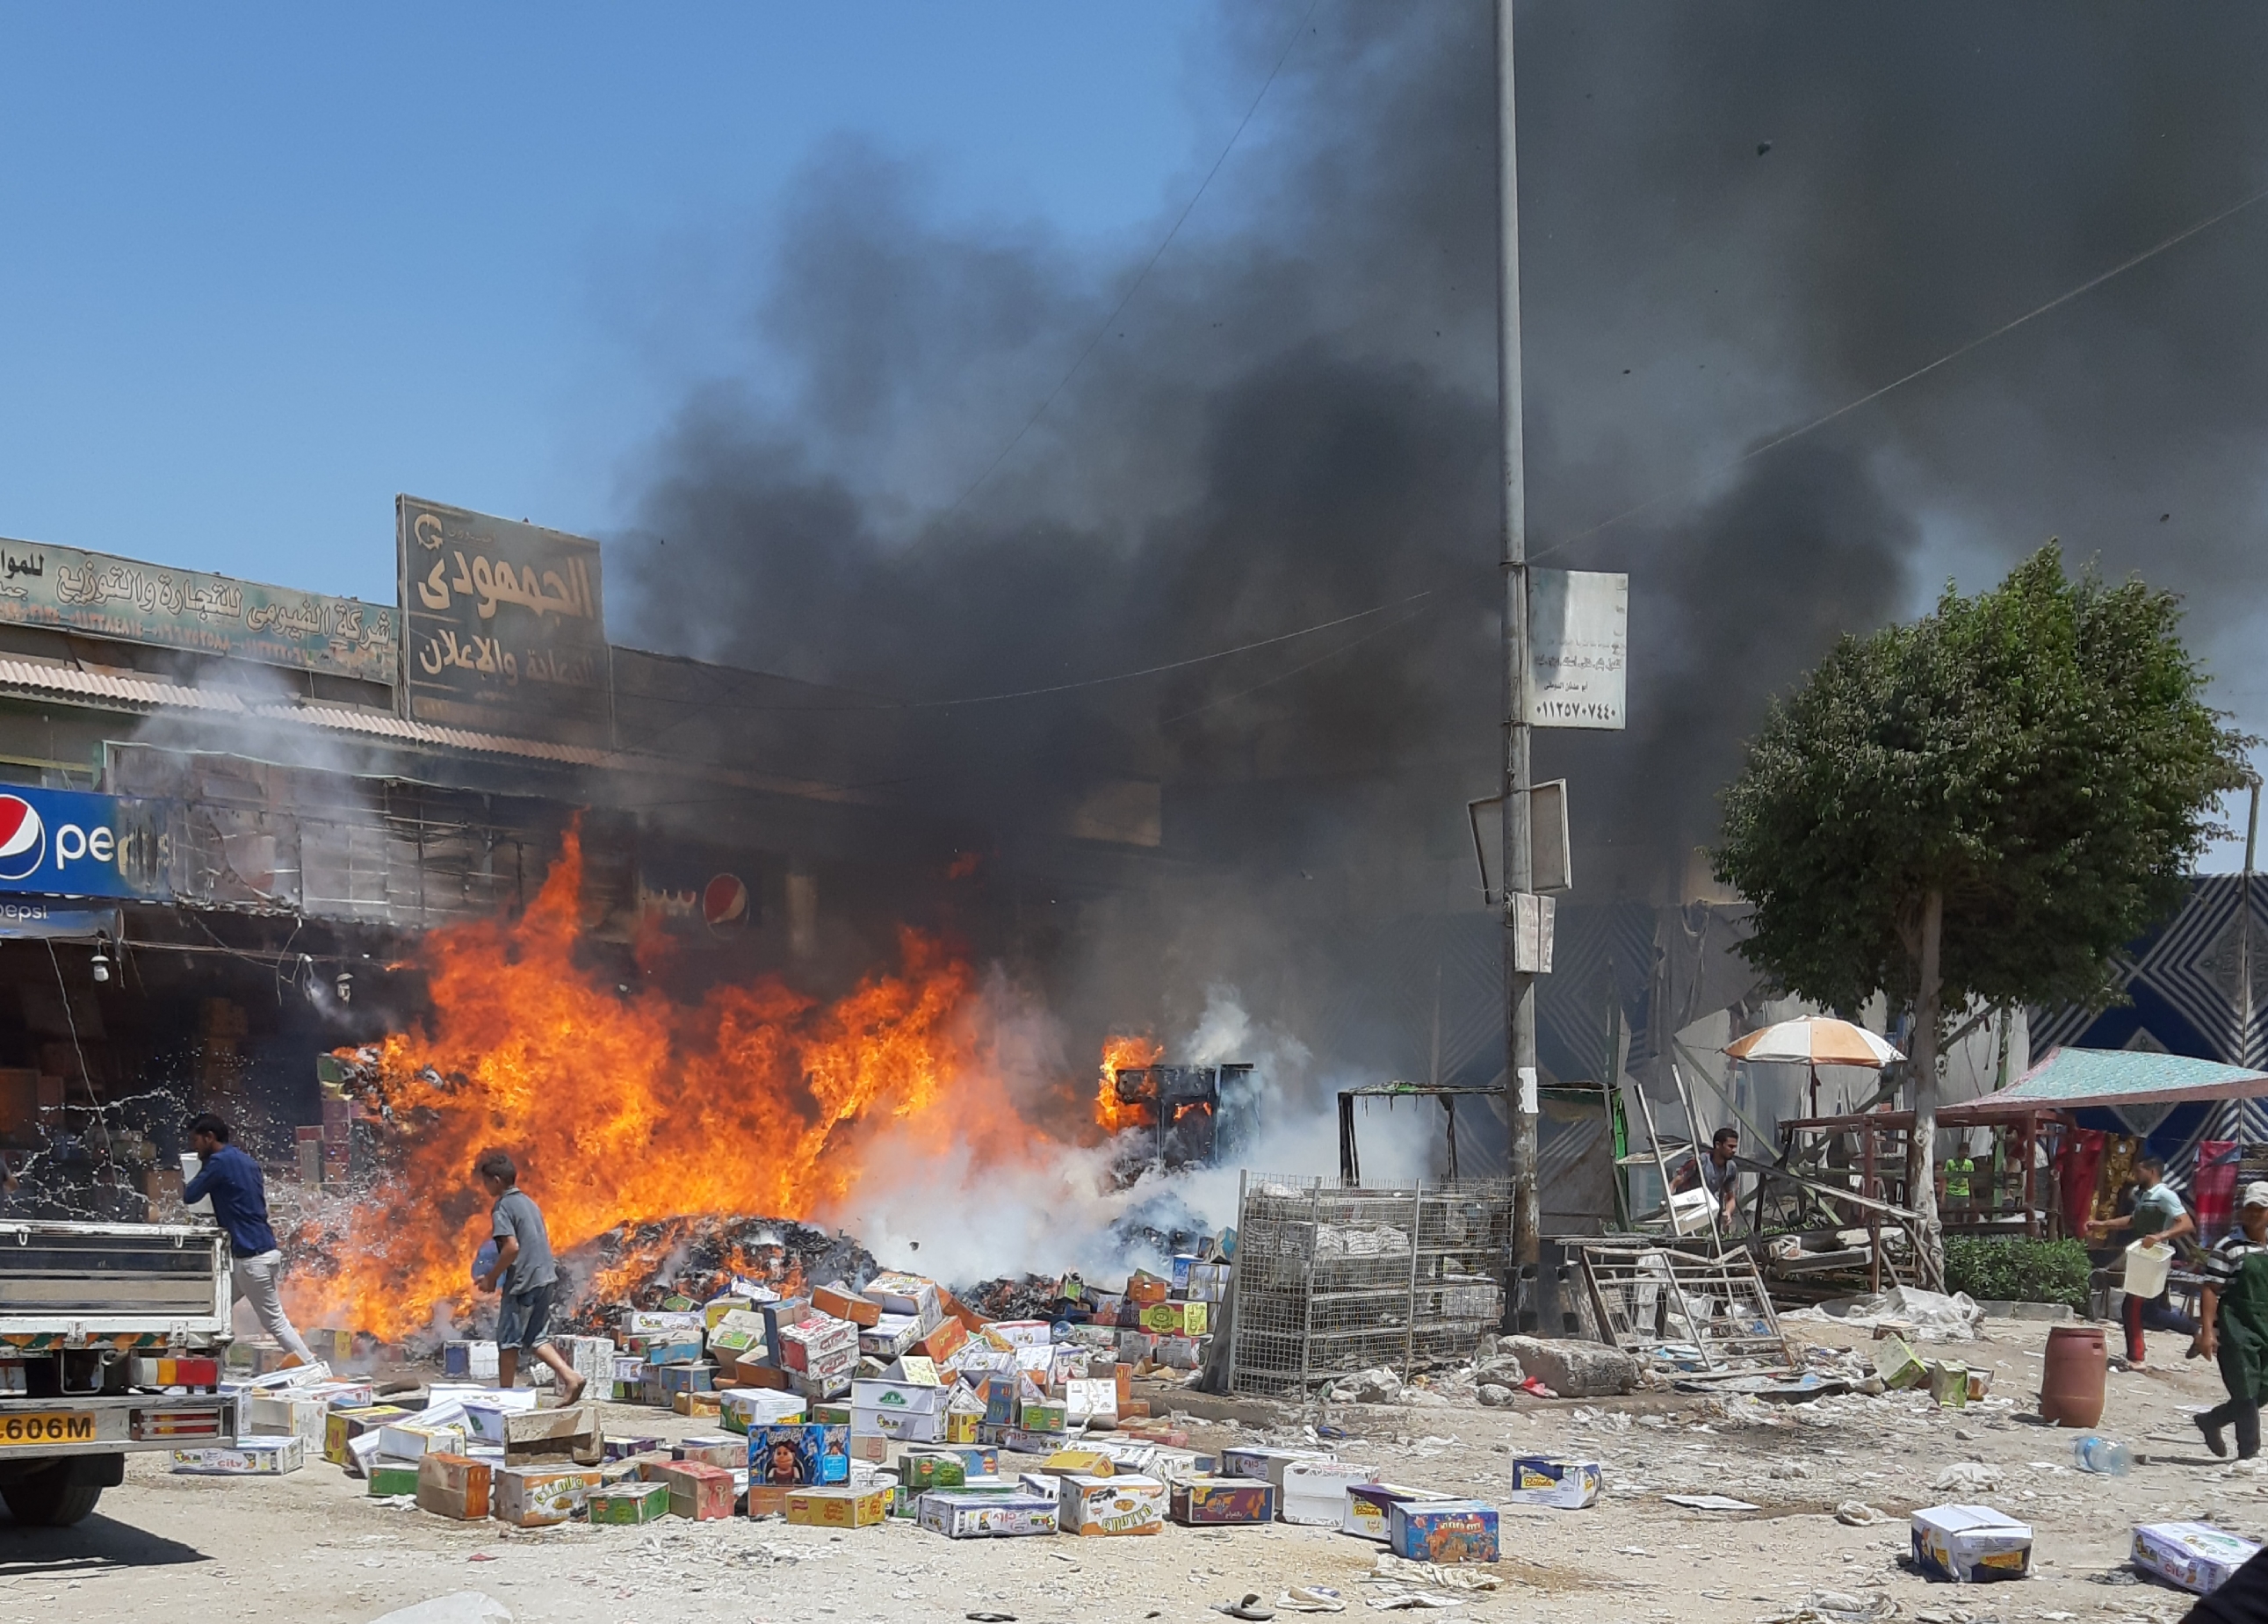 بالصور اشتعال حريق بسوق الحي السادس بمدينة ٦أكتوبر